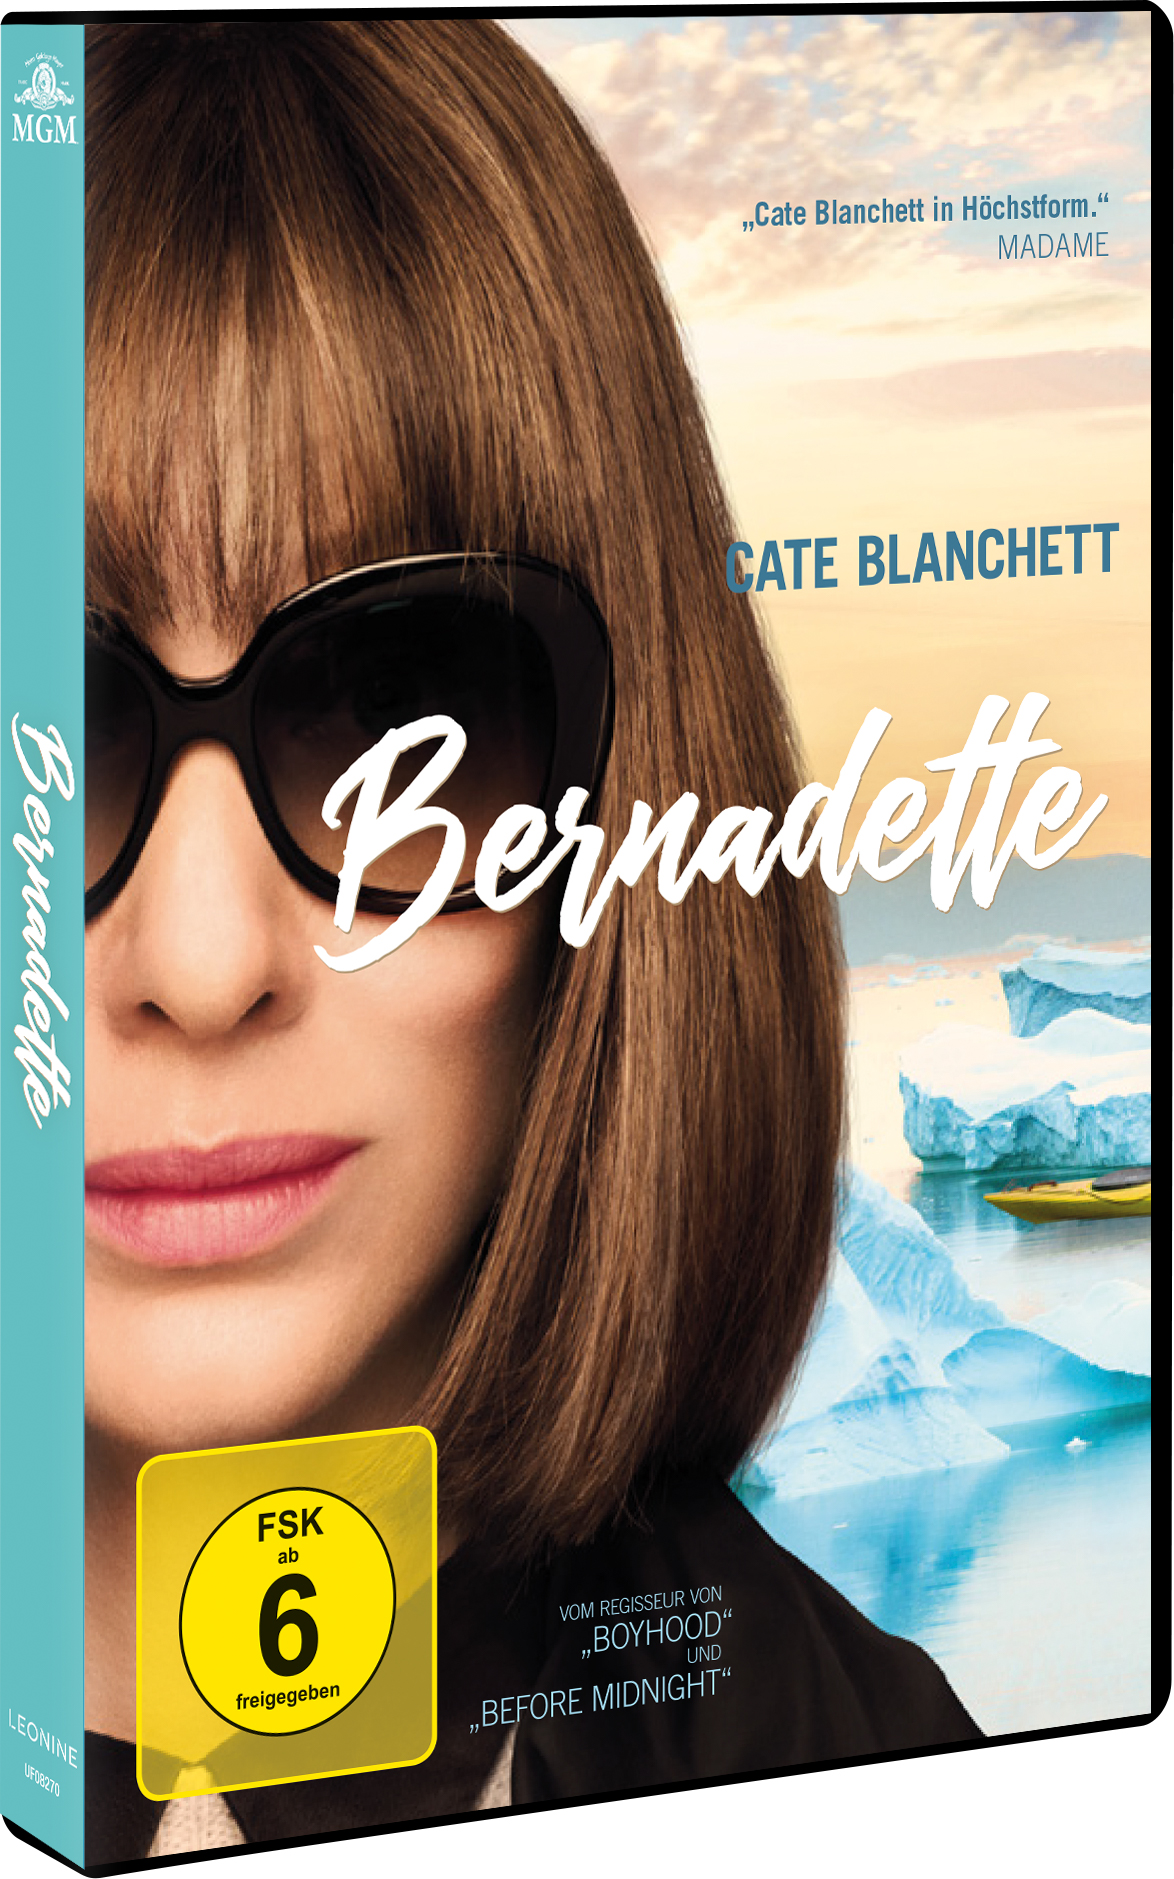 Bernadette DVD